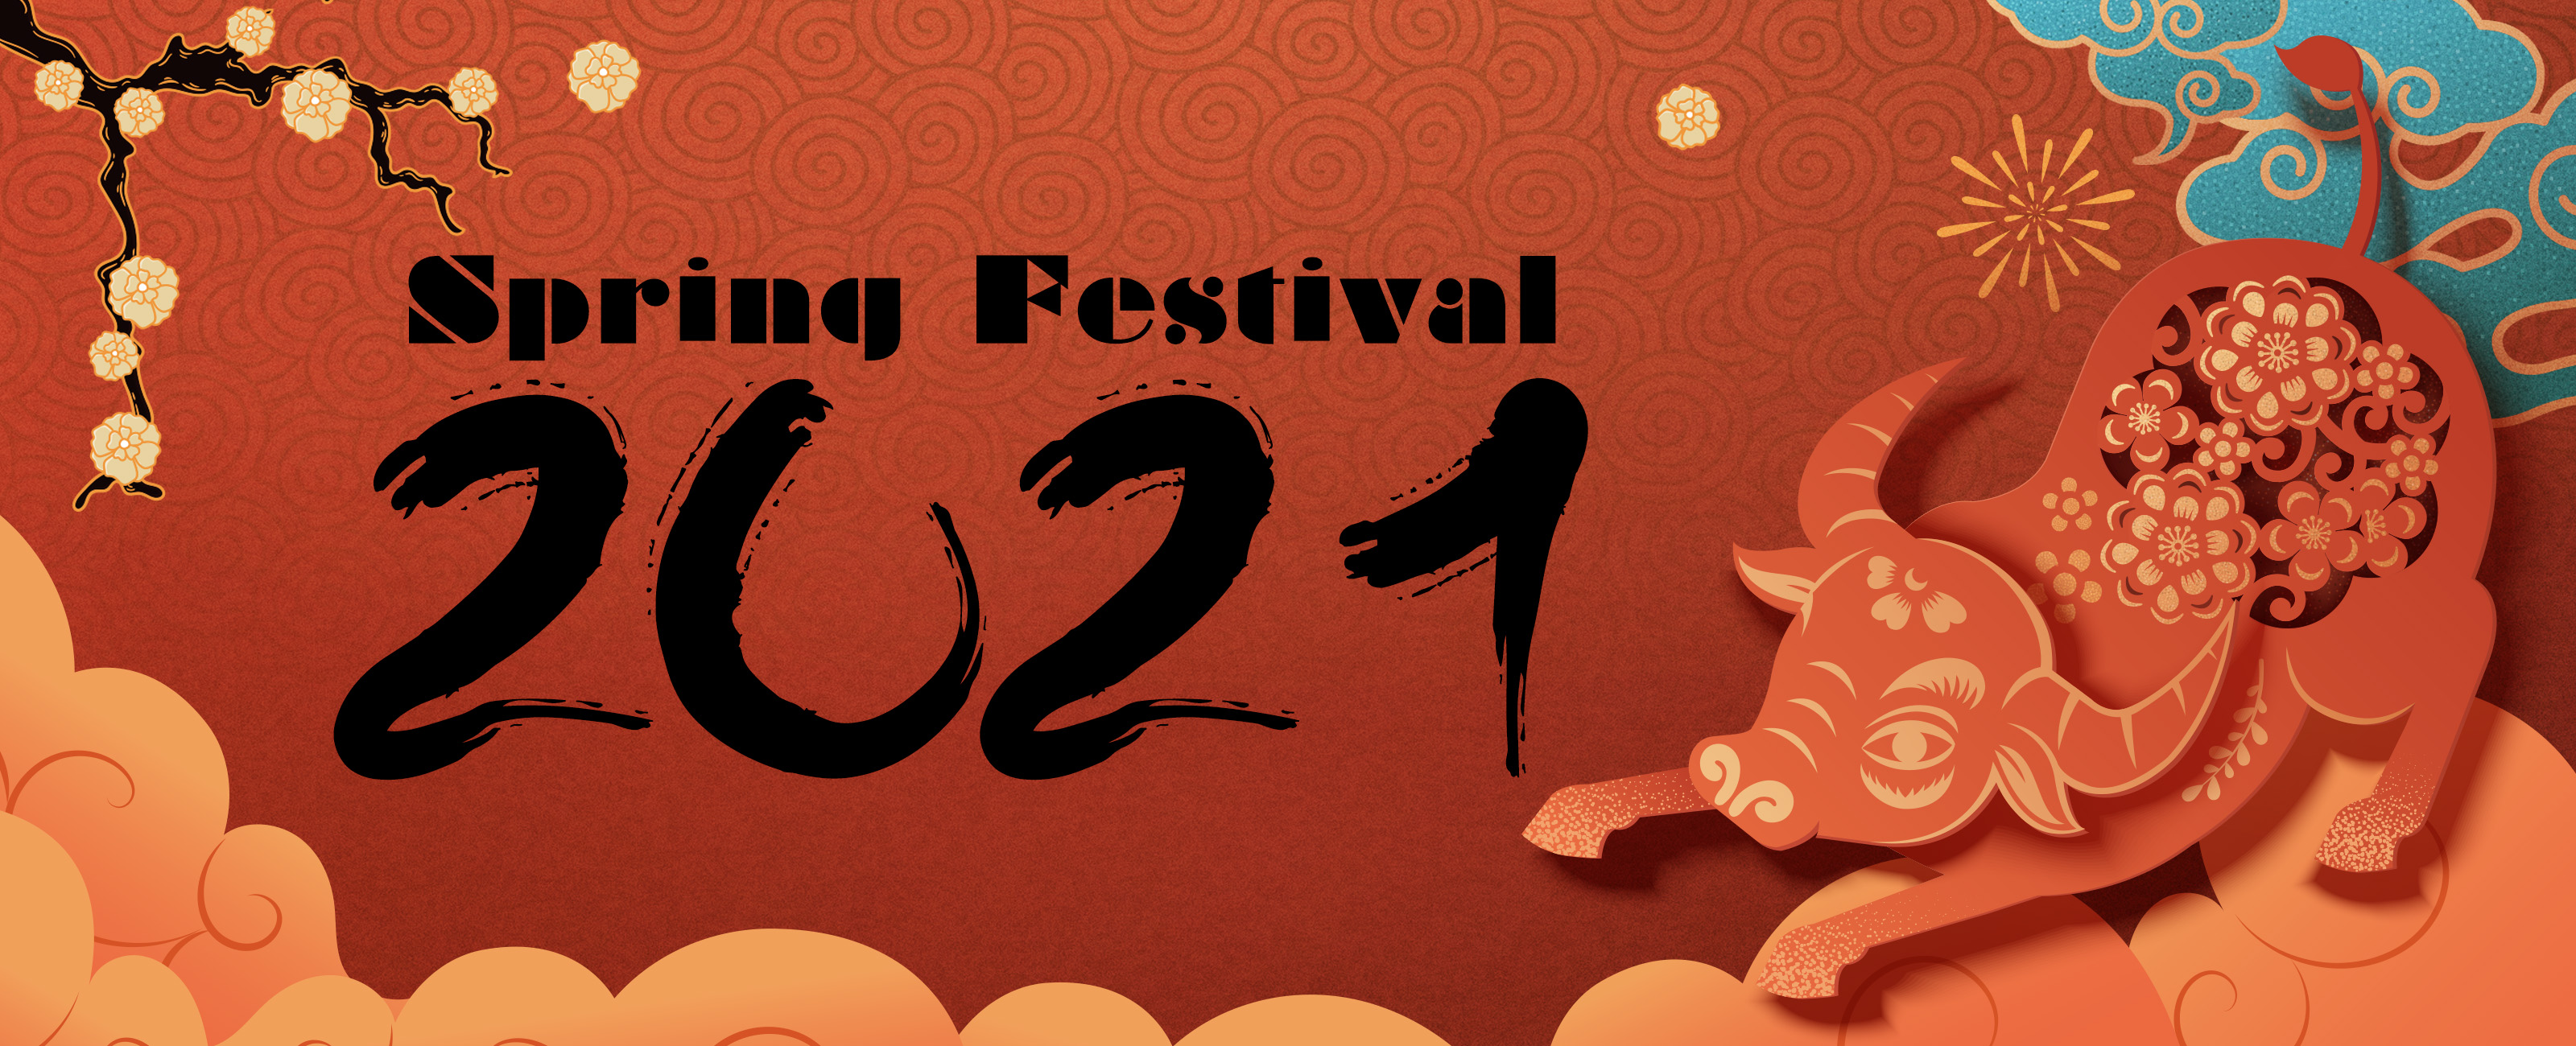 2021 Spring Festival